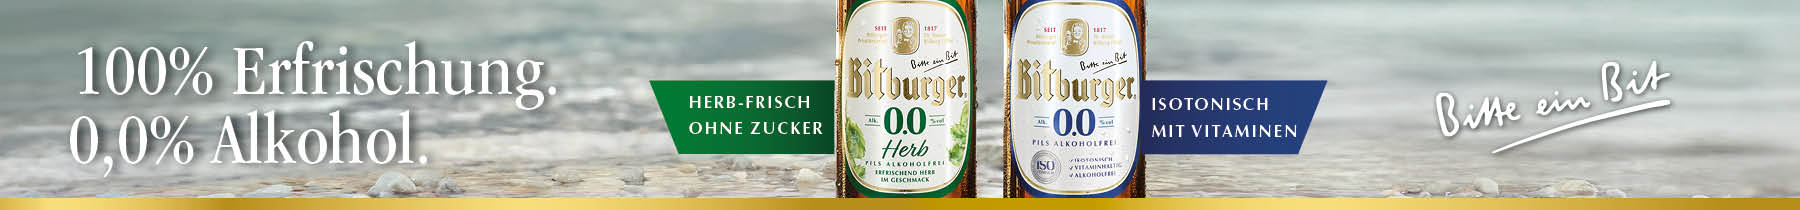 Bitburger Banner 